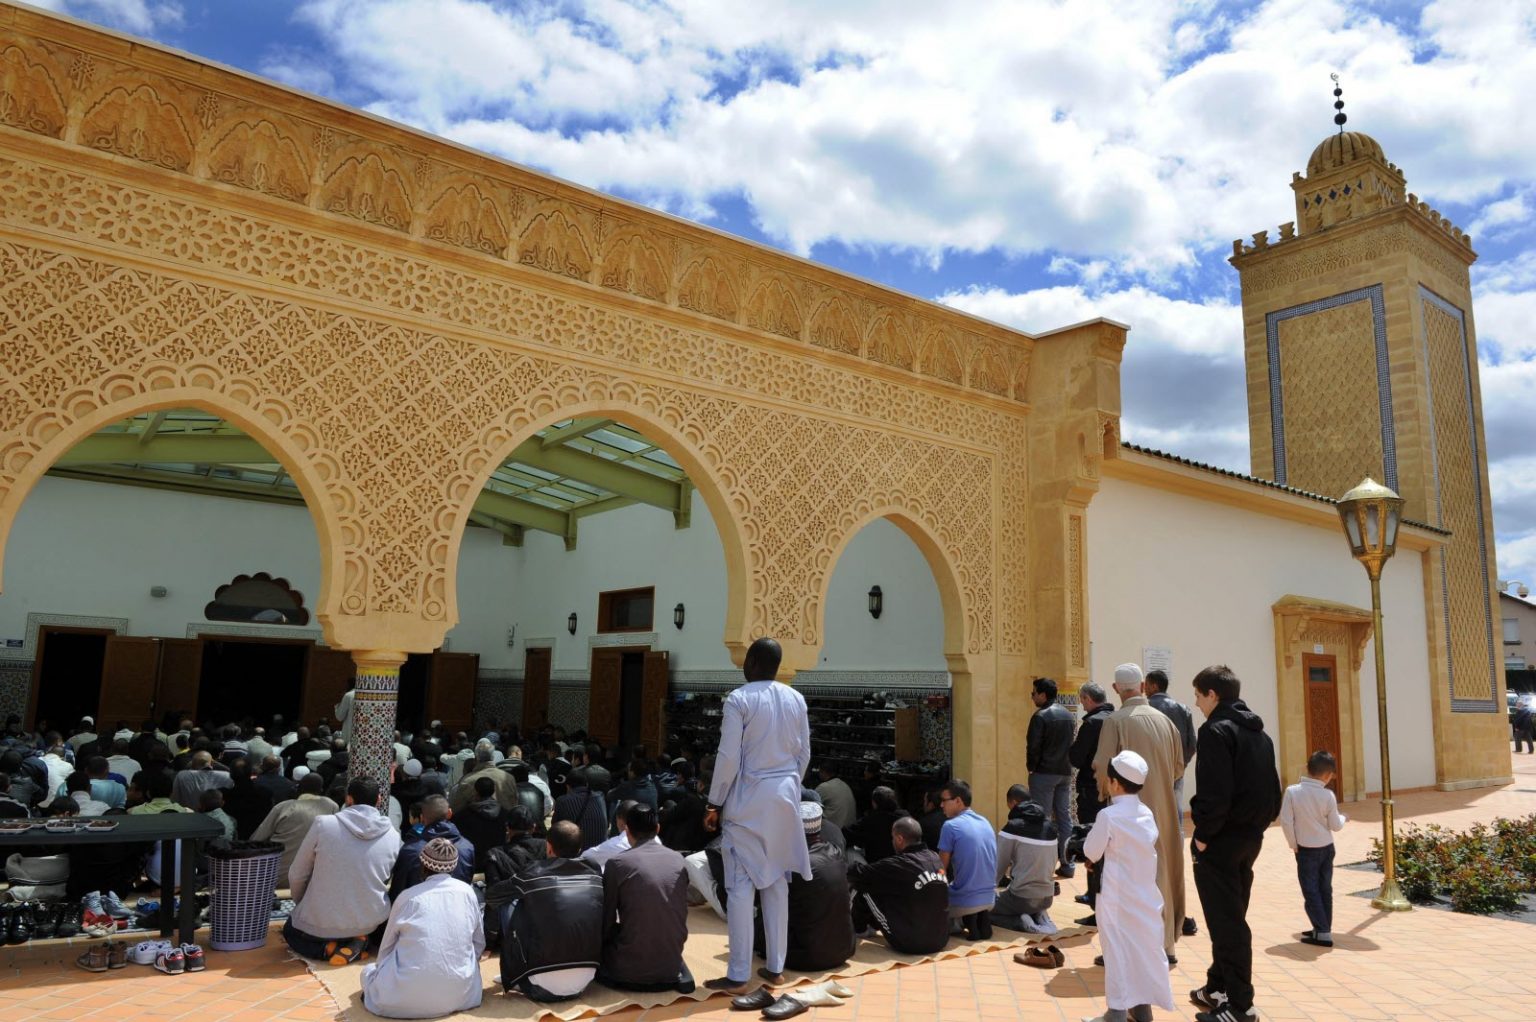 plus d un millier de fideles se deplacent lors de la grande priere du vendredi a la mosquee mohammed vi photo progres 1583939377